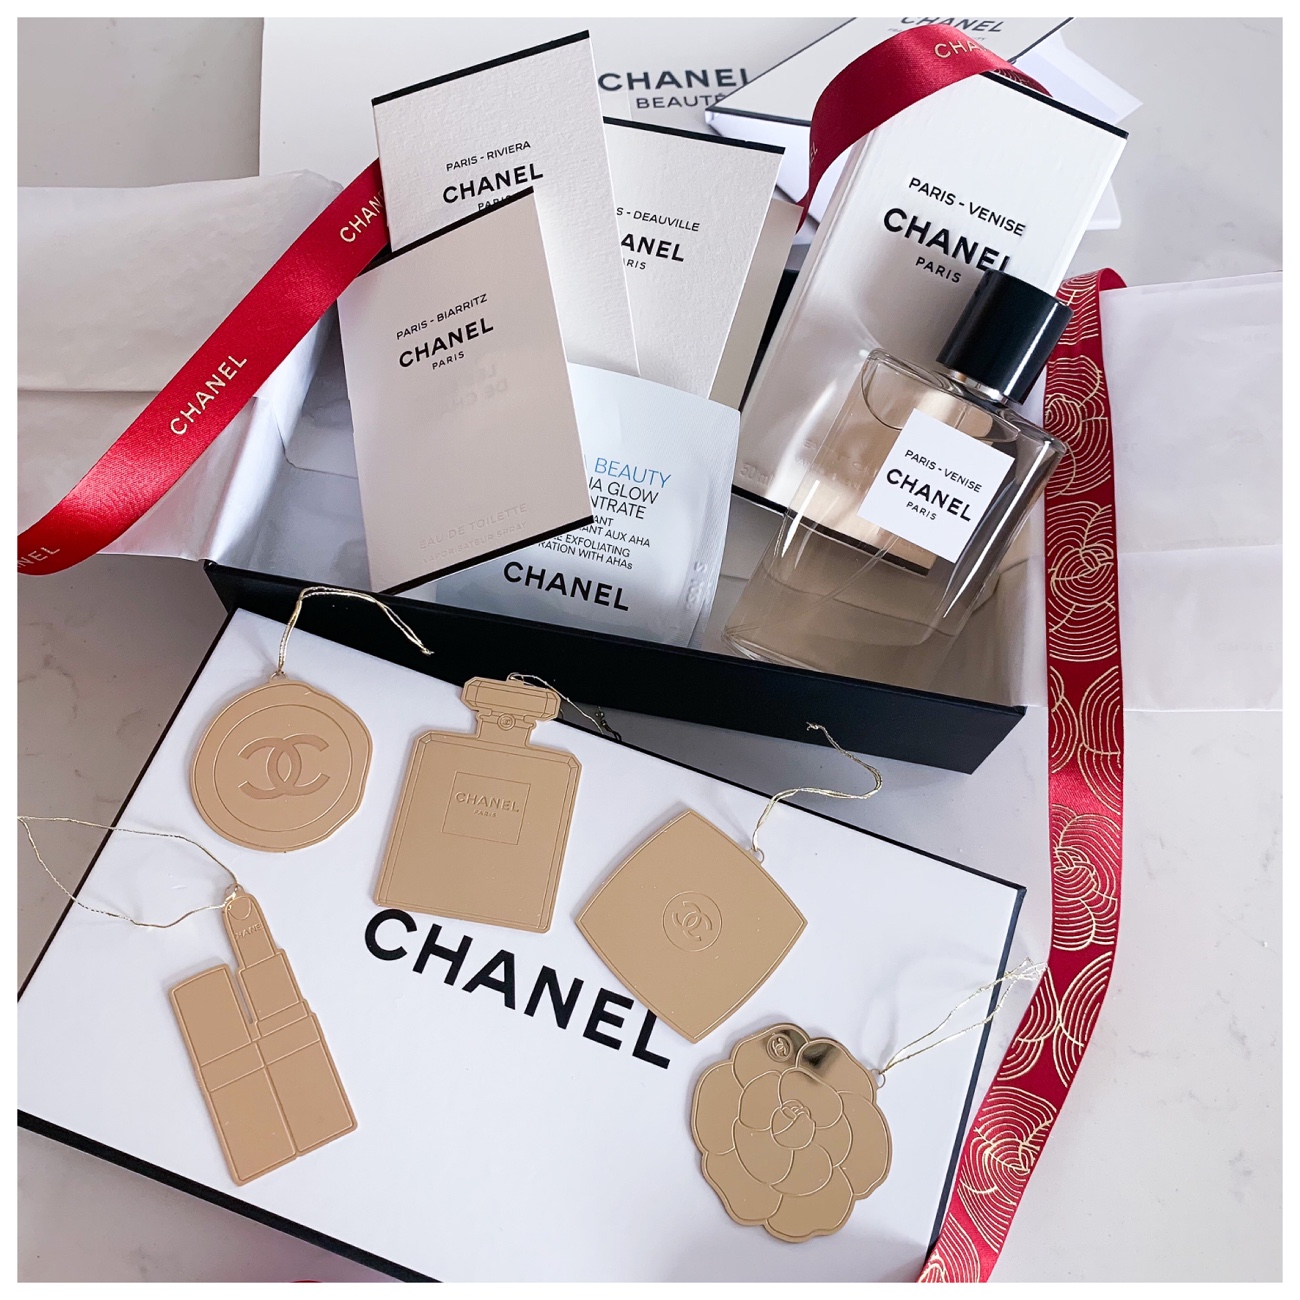 Persolaise Review: Les Eaux De Chanel - Paris-Biarritz, Paris-Deauville &  Paris-Venise from Chanel (Olivier Polge; 2018) 